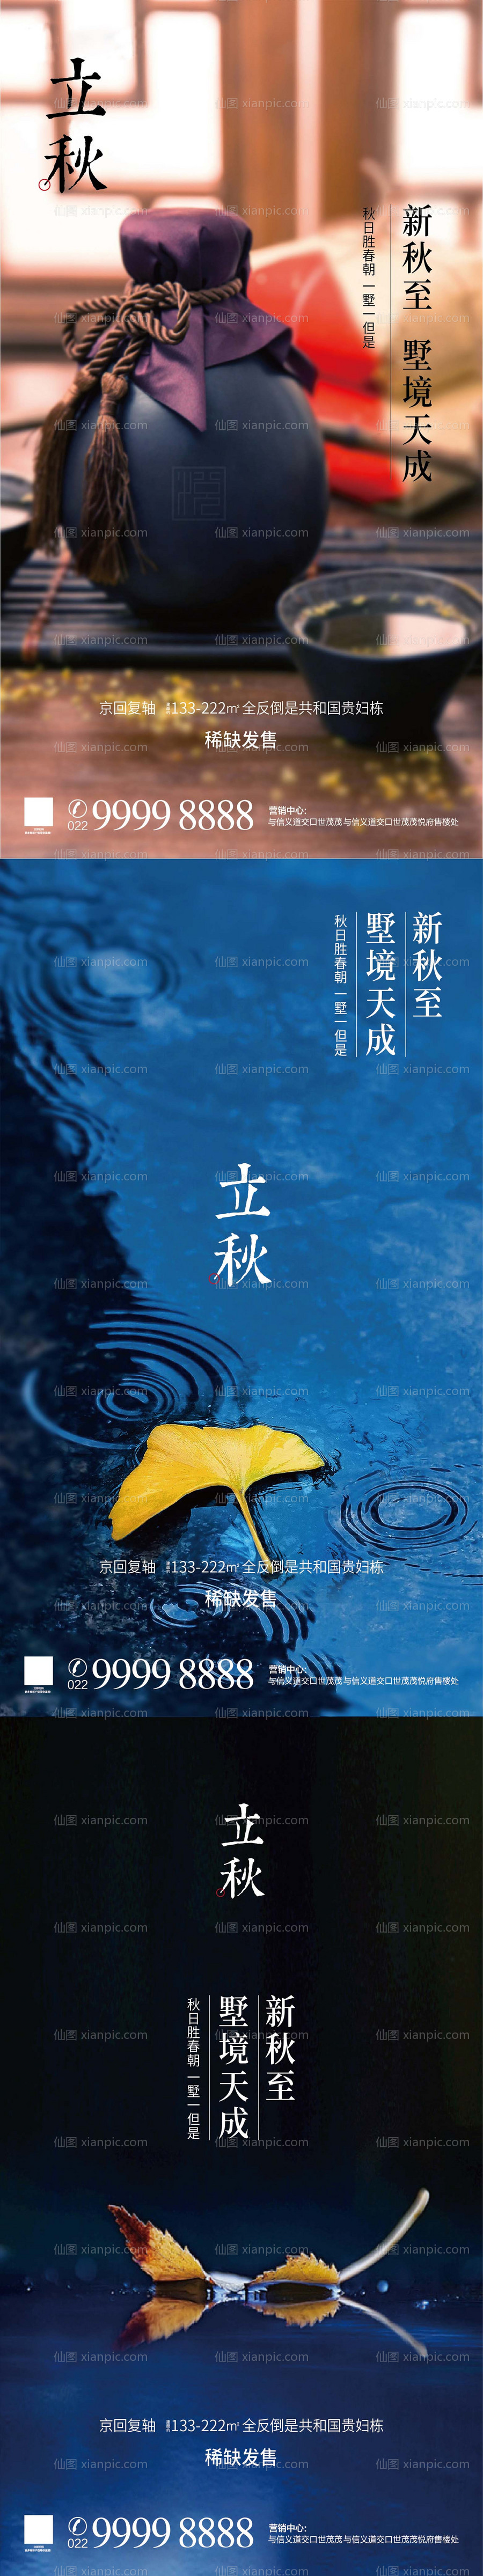 素材乐-立秋节气系列海报